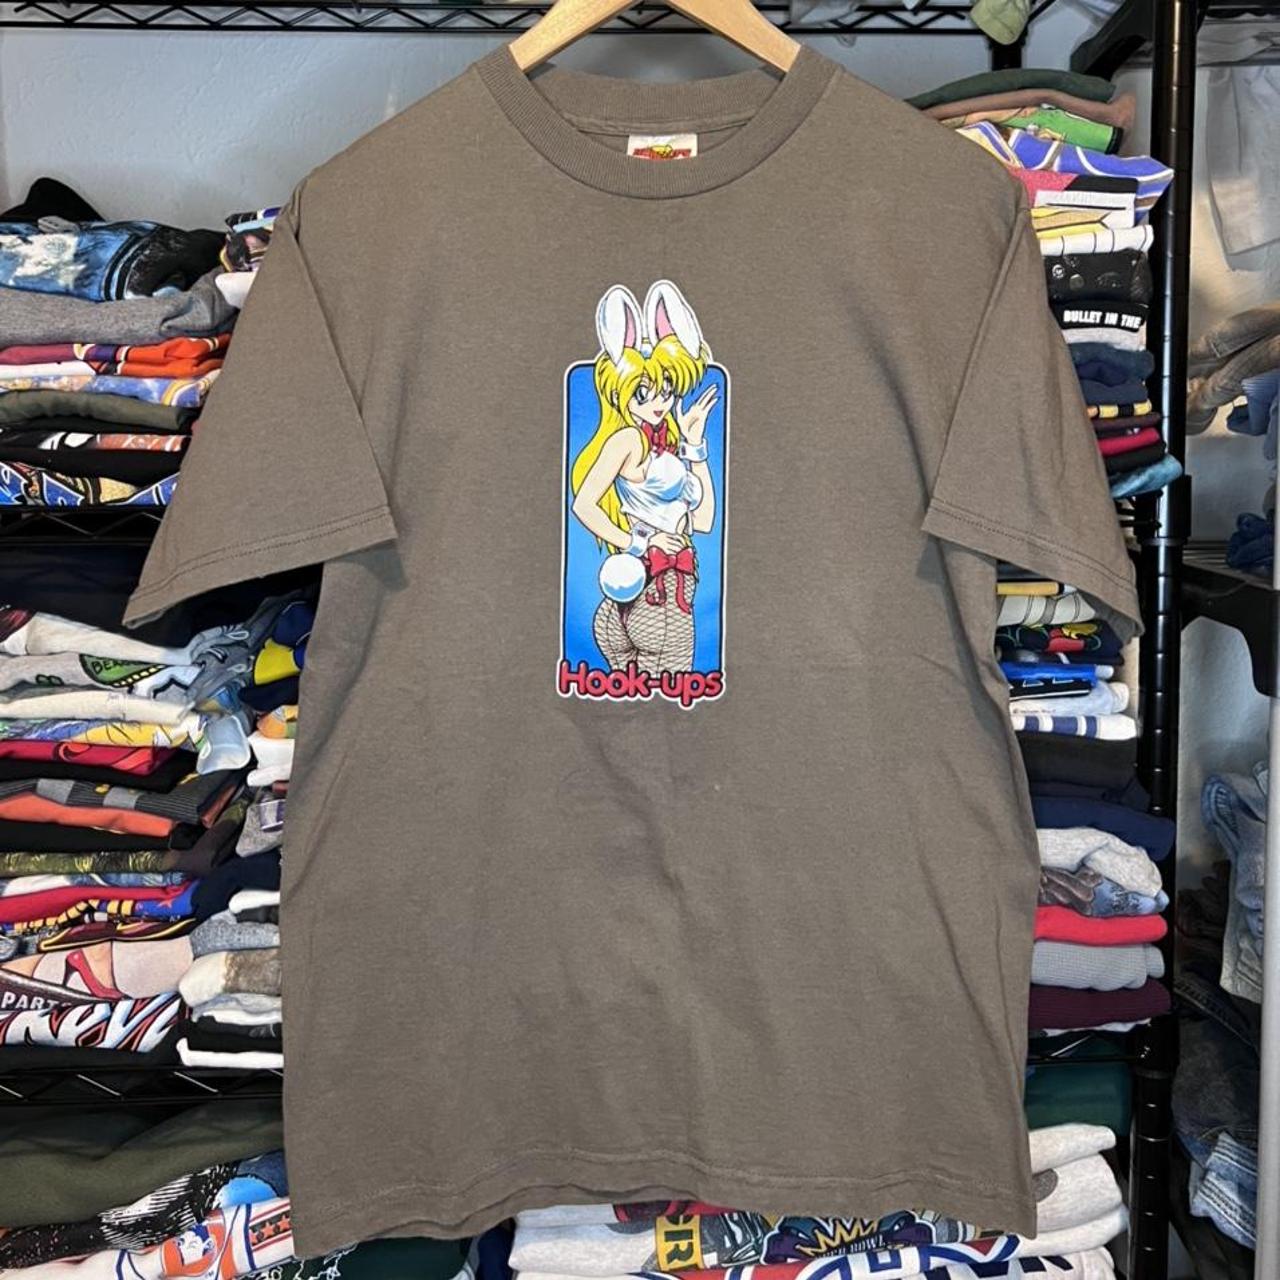 Vintage Bunny Girl Hook-Ups Skateboarding T-Shirt. - Depop